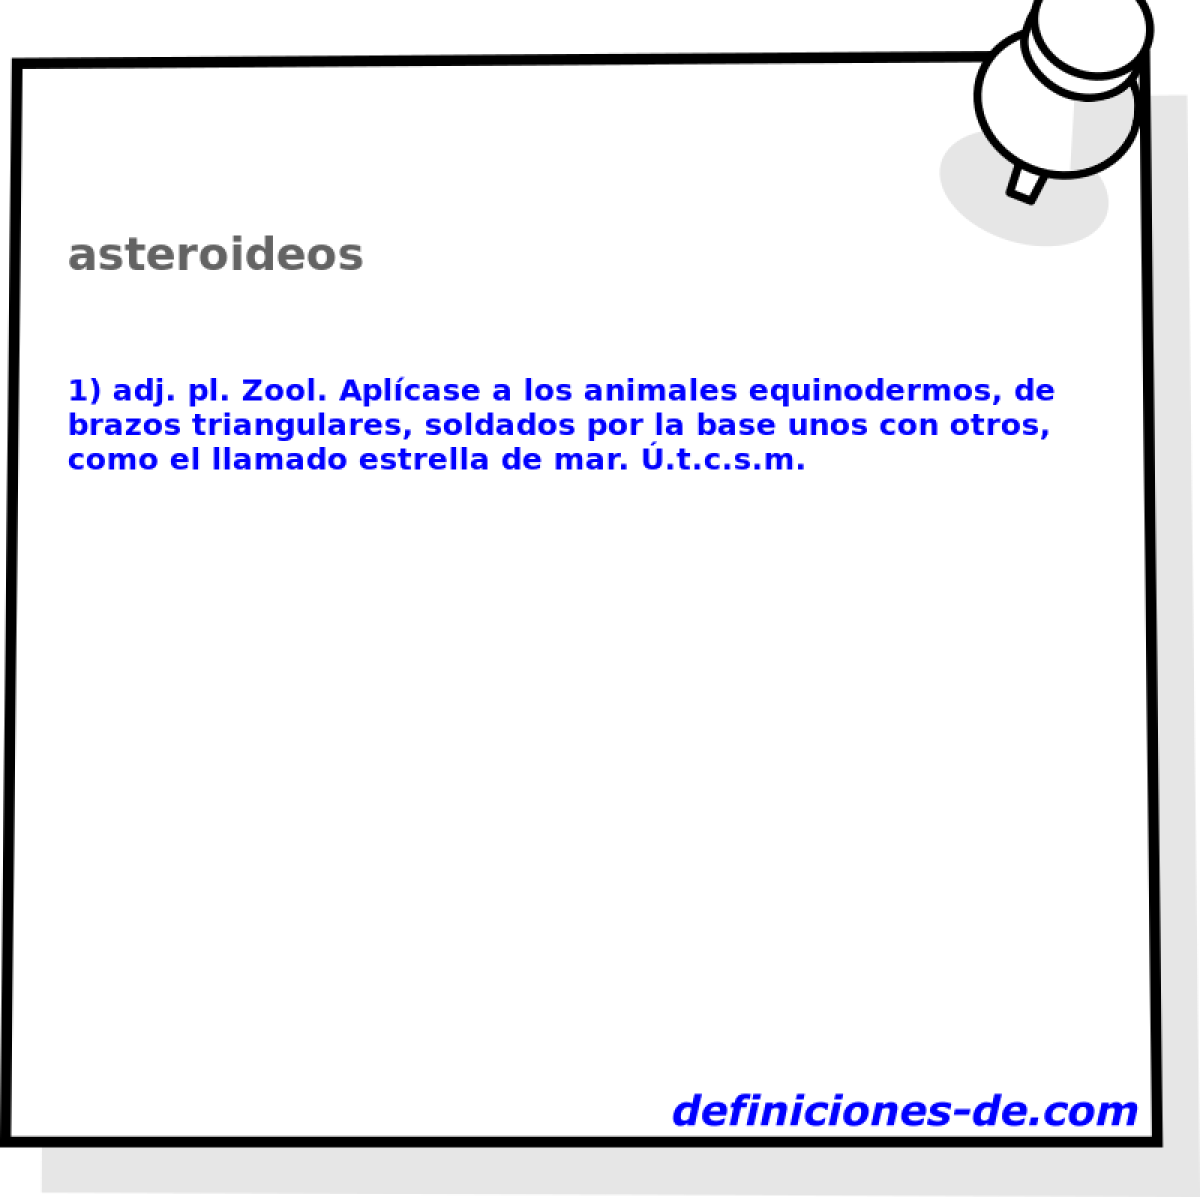 asteroideos 